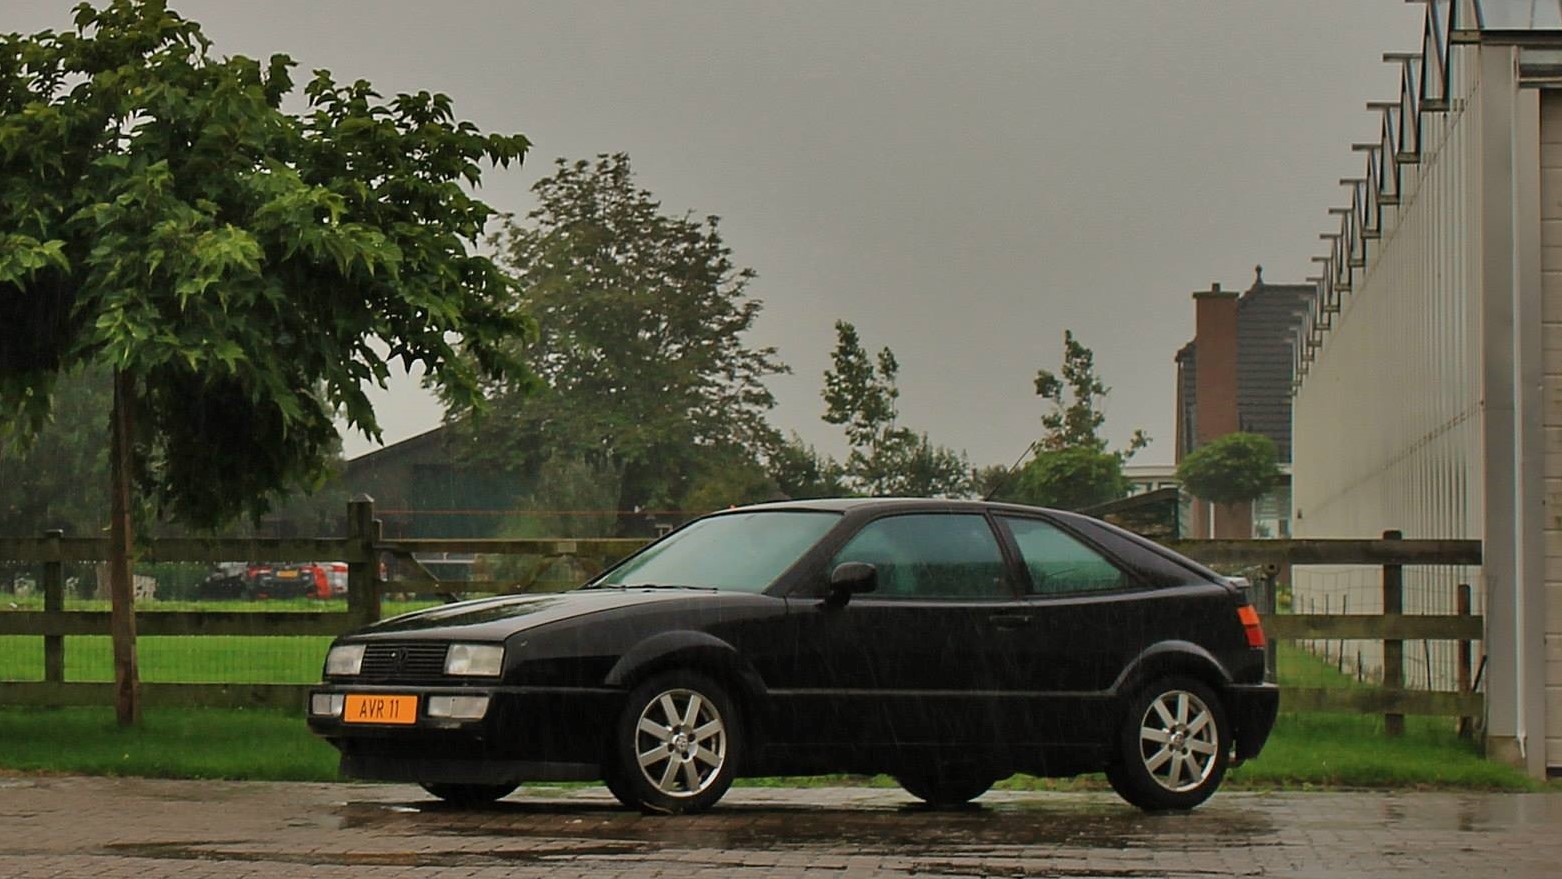 VW Corrado G60 in de regen van Ralph Stoove